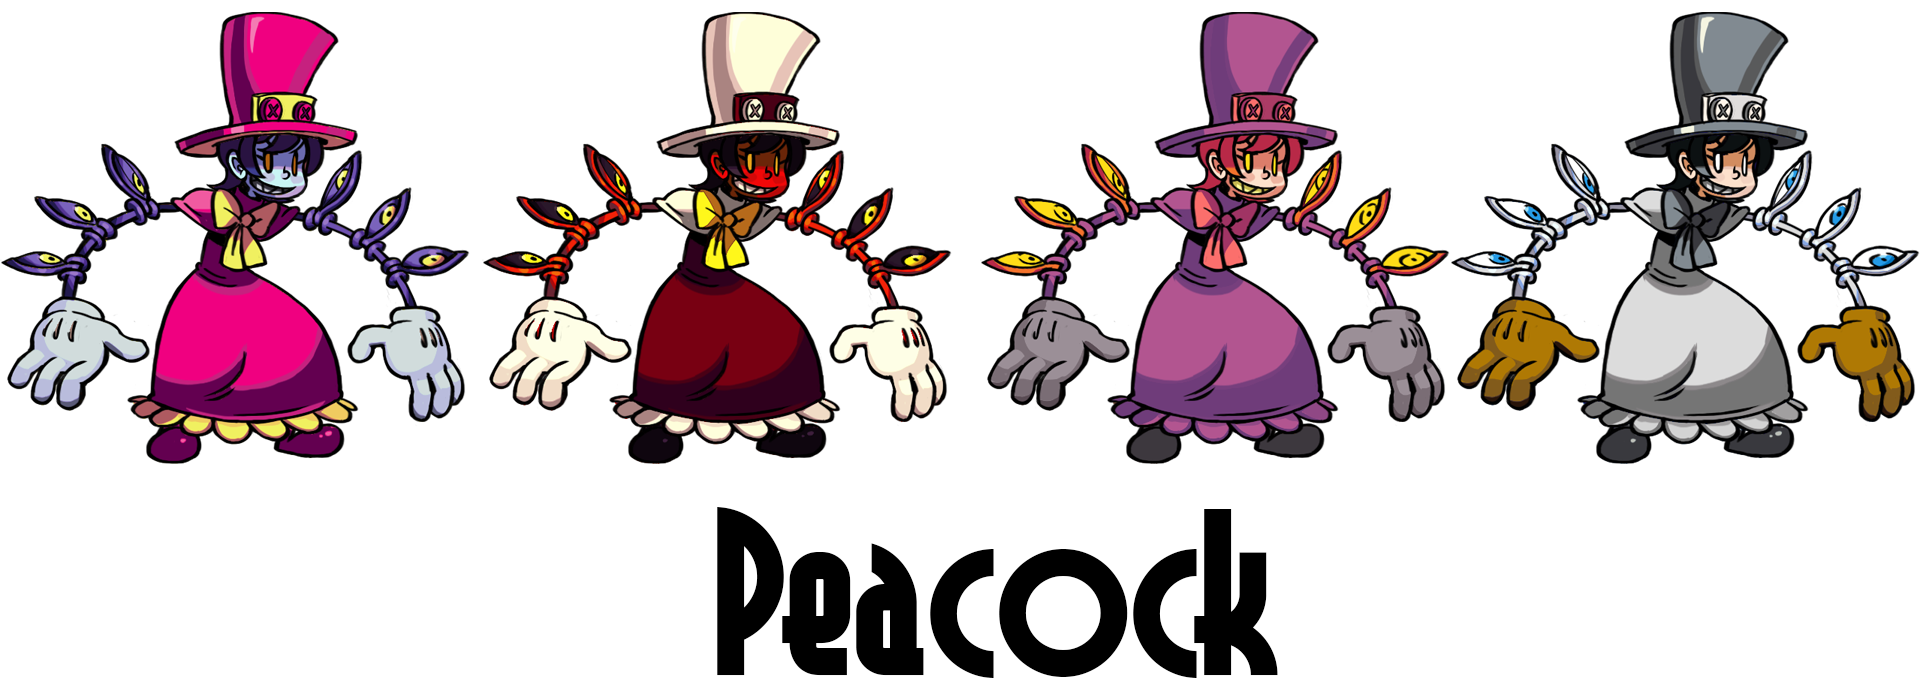 Peacock Palette Skullgirls